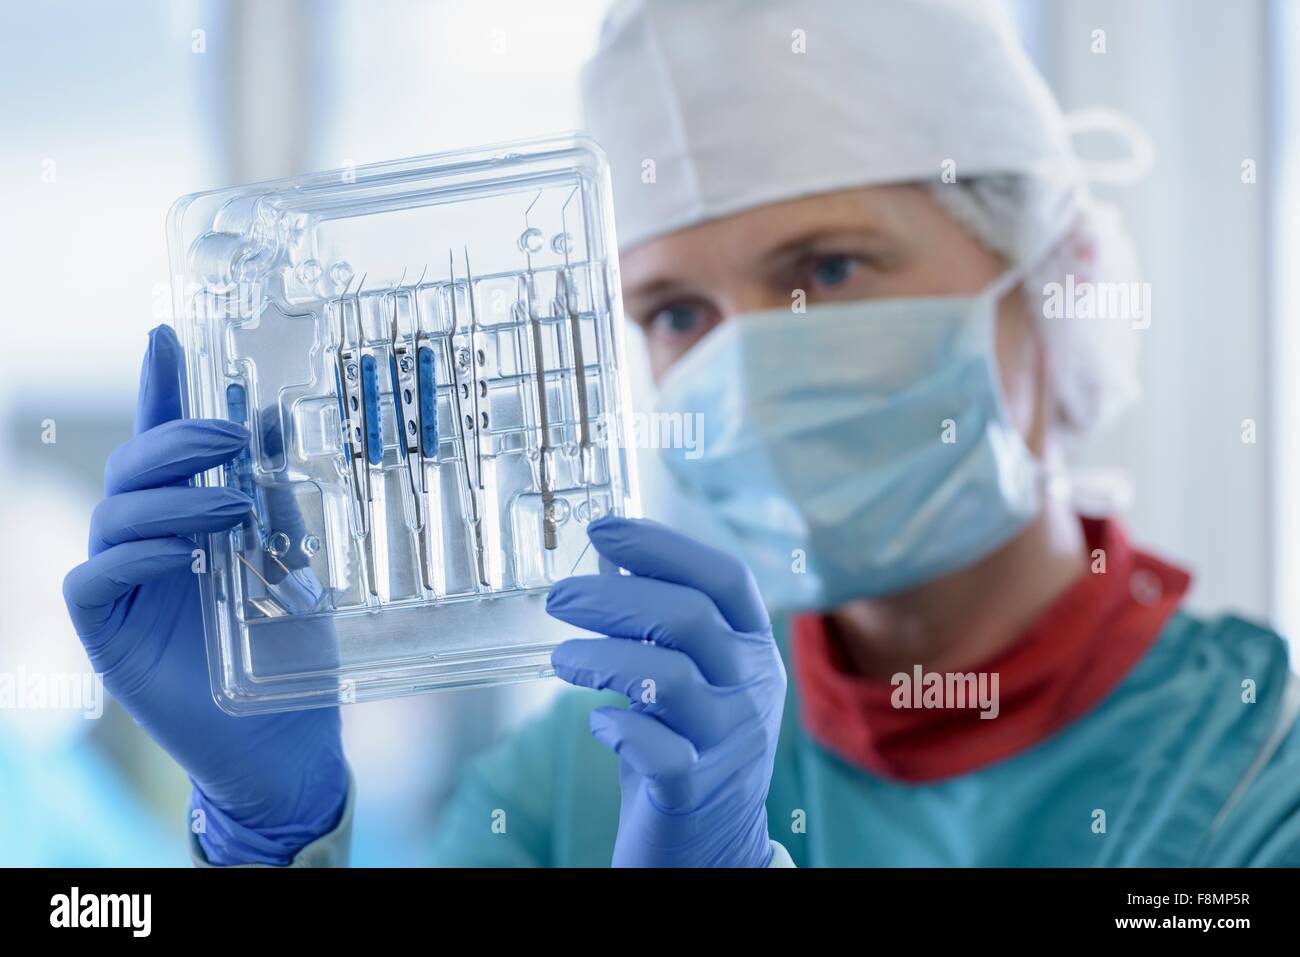 Arbeiter Inspektion chirurgische Instrumente im Reinraum von chirurgischen Instrumenten Fabrik, Nahaufnahme Stockfoto